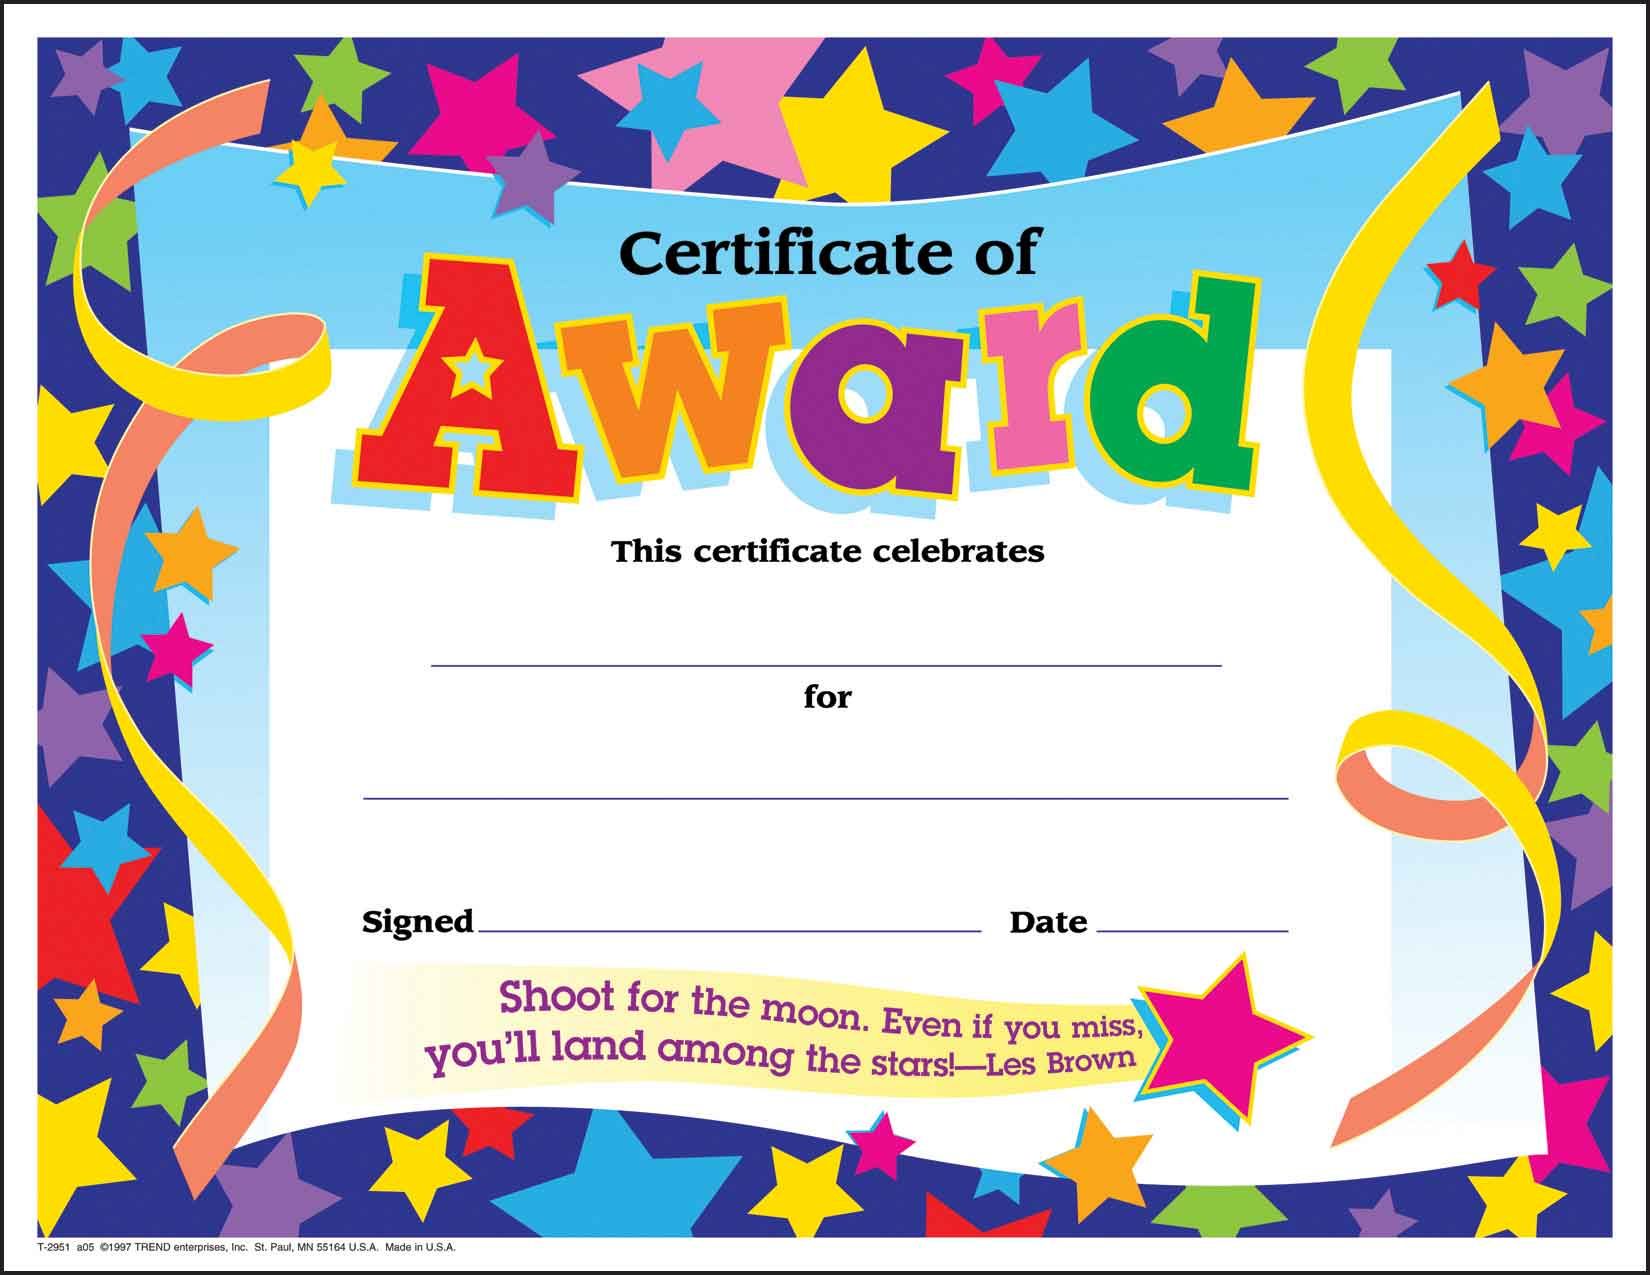 Certificate children's